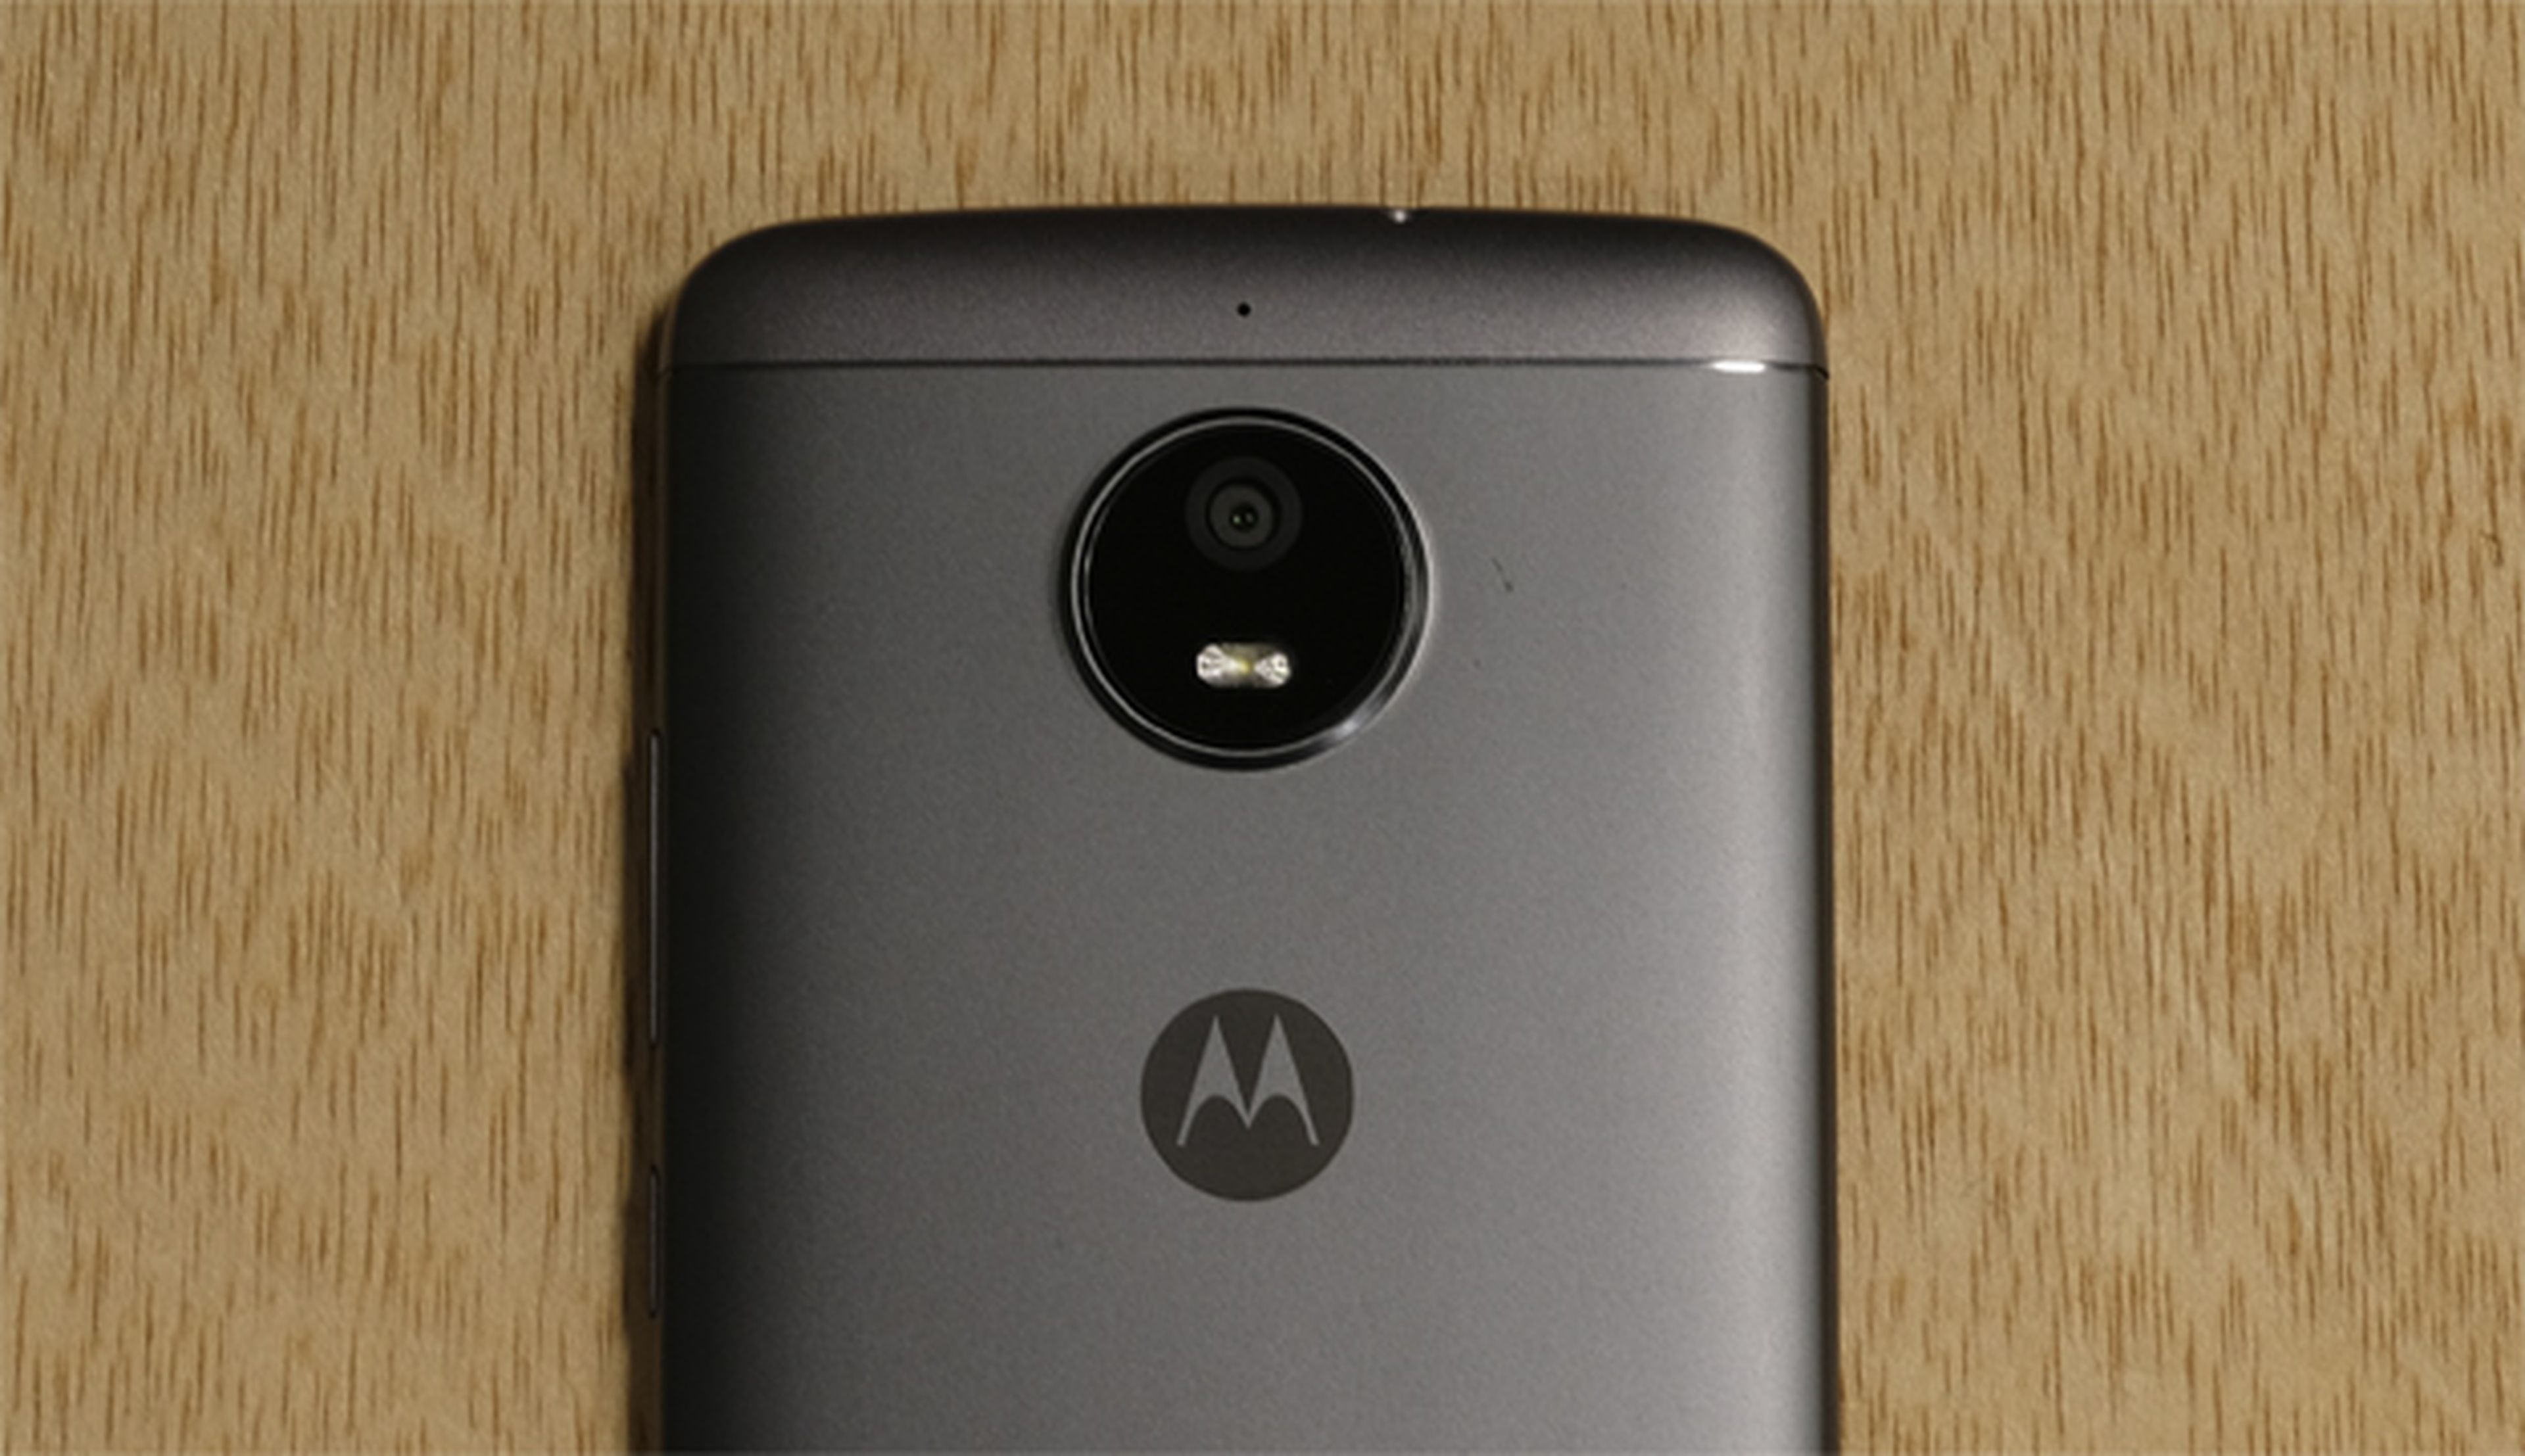 Y hasta aquí llega la review del Motorola Moto E4